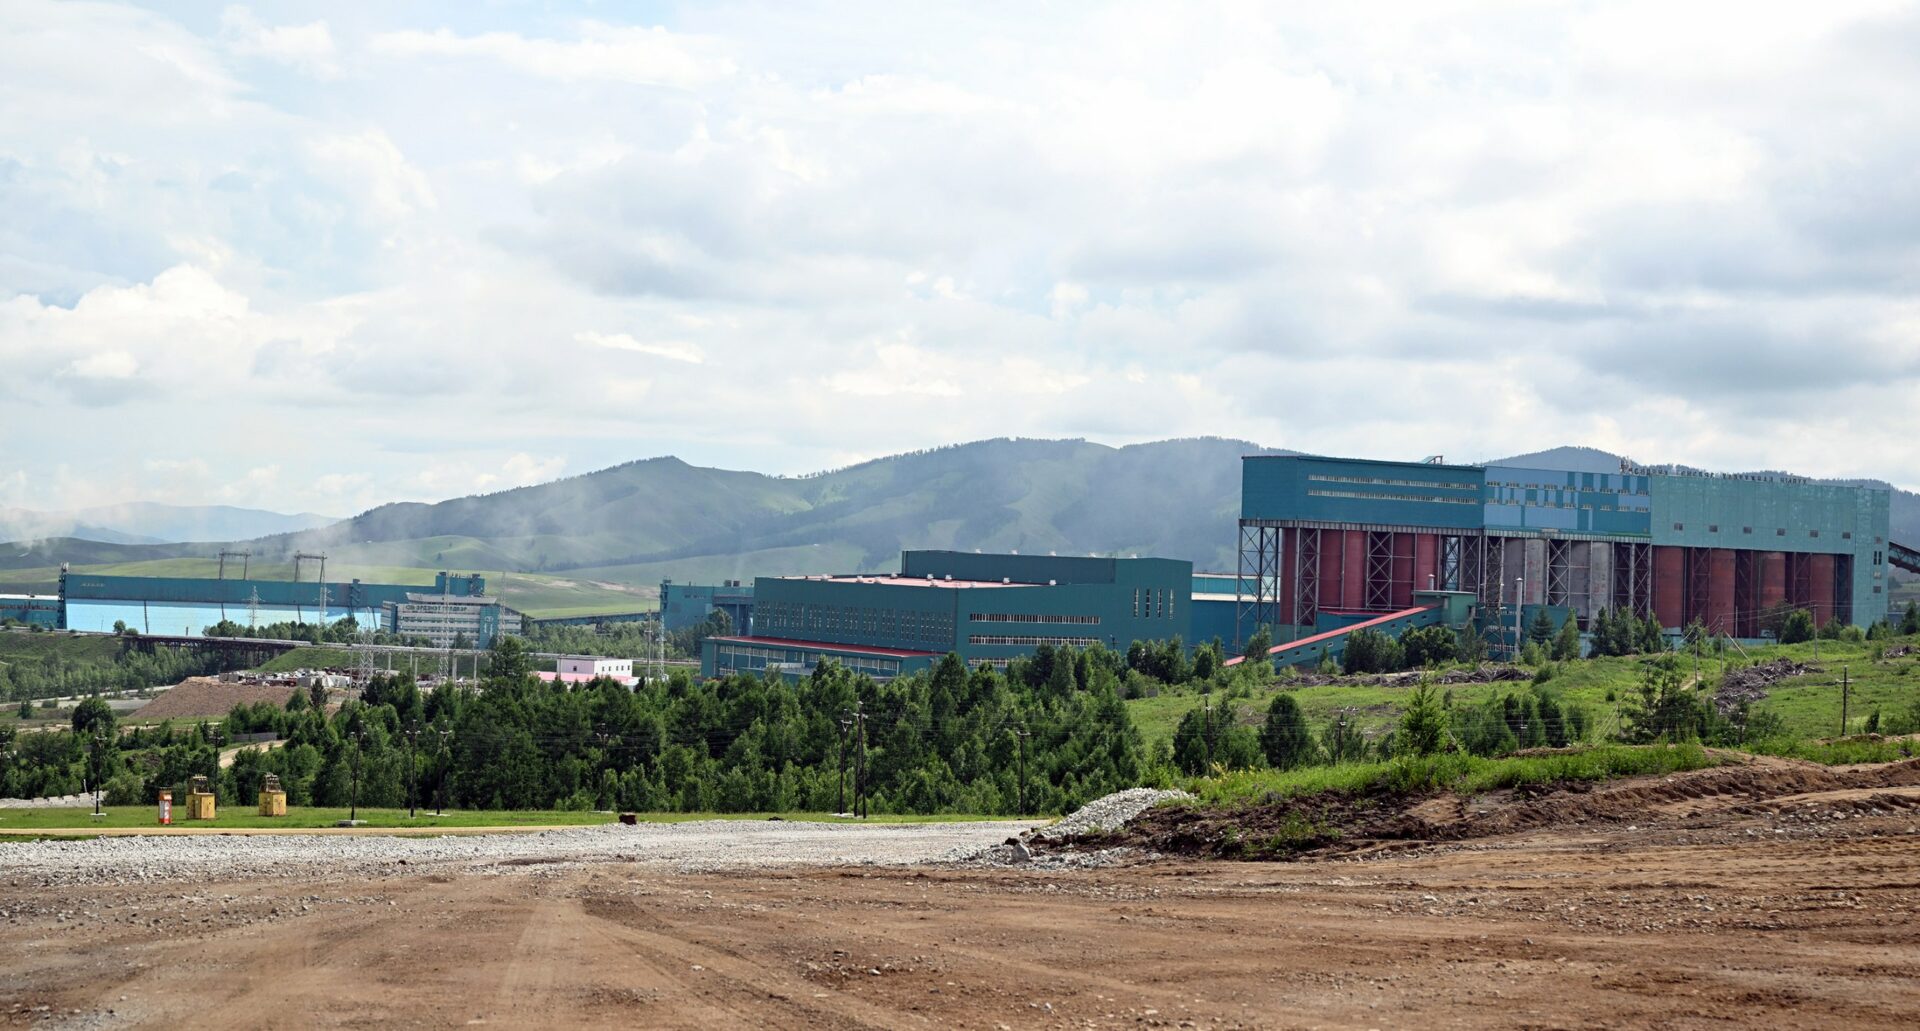 f87faf41 43f4 4619 b03d 0111800851c6 Садыр Жапаров в Монголии посетил горнодобывающий завод «Эрдэнэт» - фото